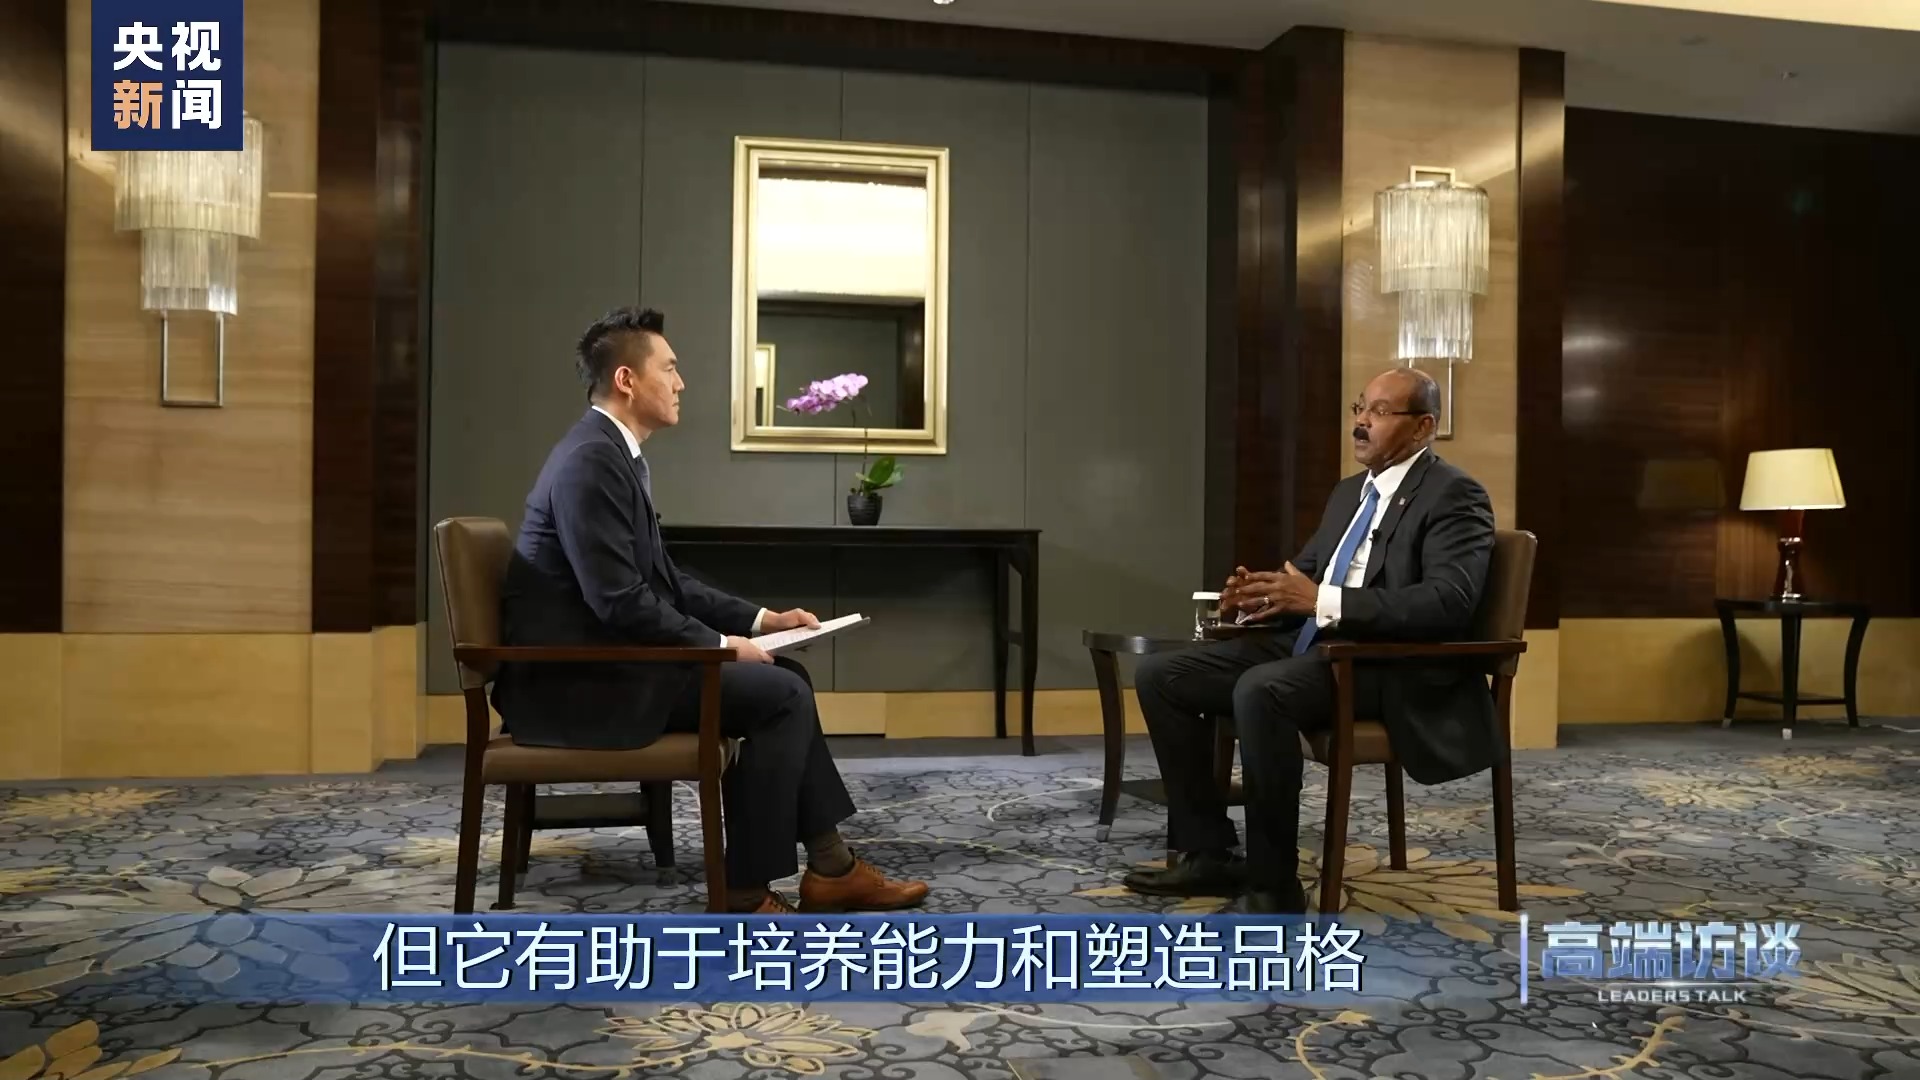 نخست وزیر آنتیگوا و باربودا: رئیس جمهور چین متعهد به توسعه کل بشریت است